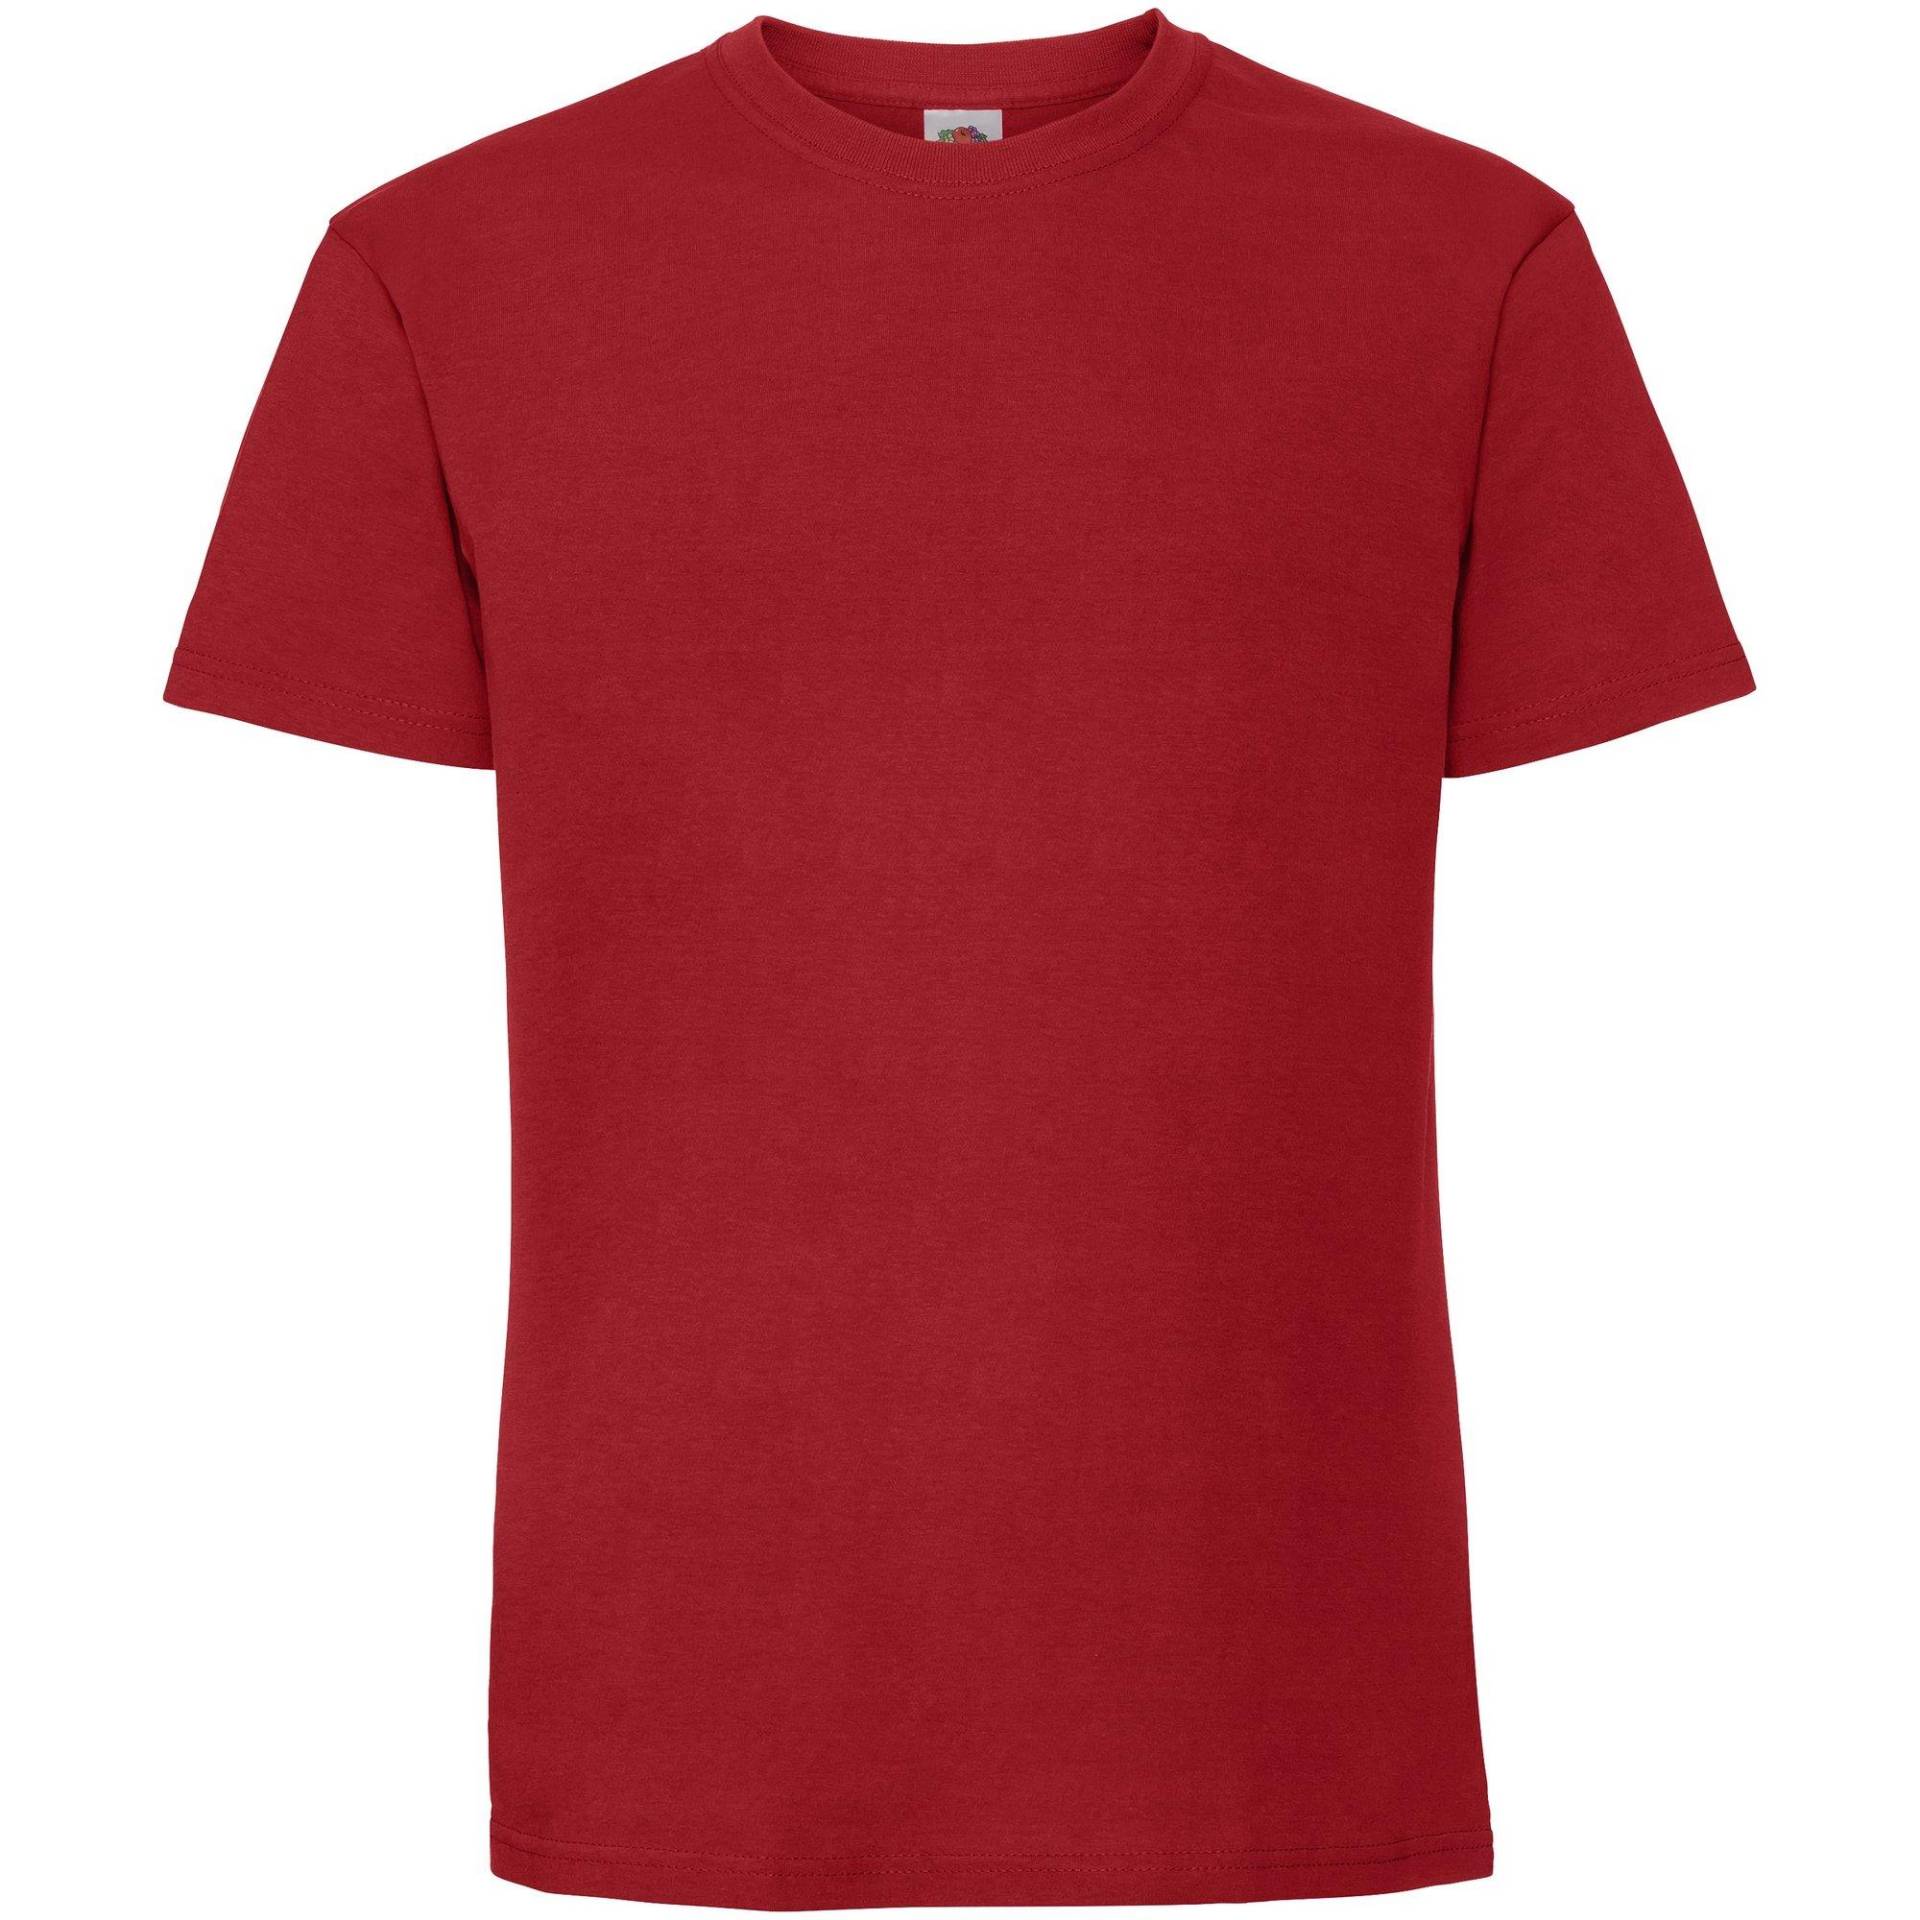 Premium Tshirt Damen Rot Bunt XL von Fruit of the Loom